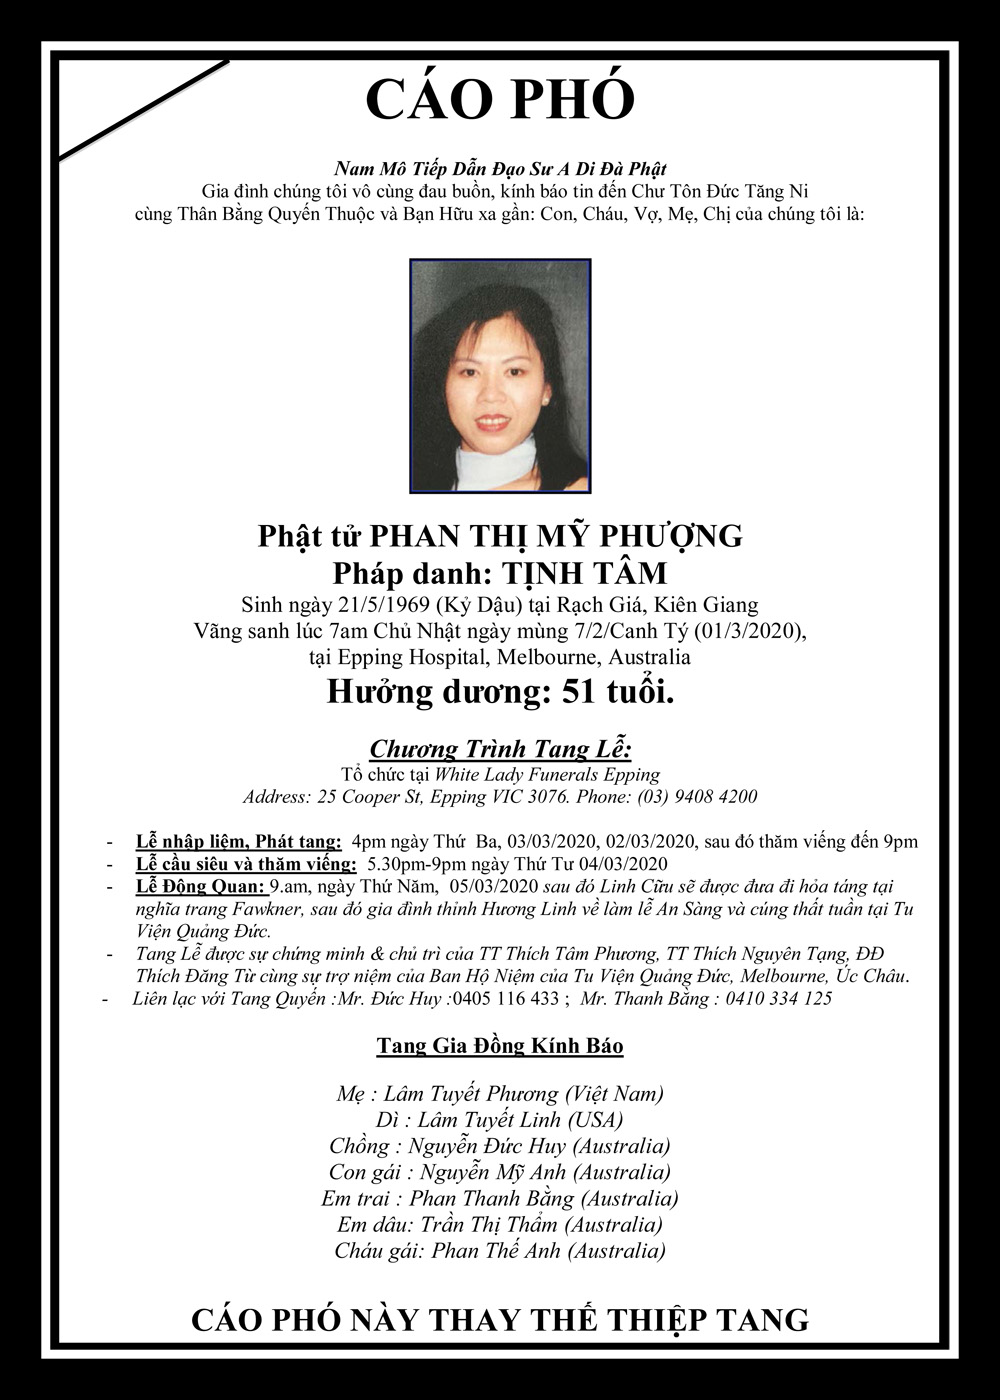 Cao Pho Tang Le Phat tu Phan Thi My Phuong-1969-2020